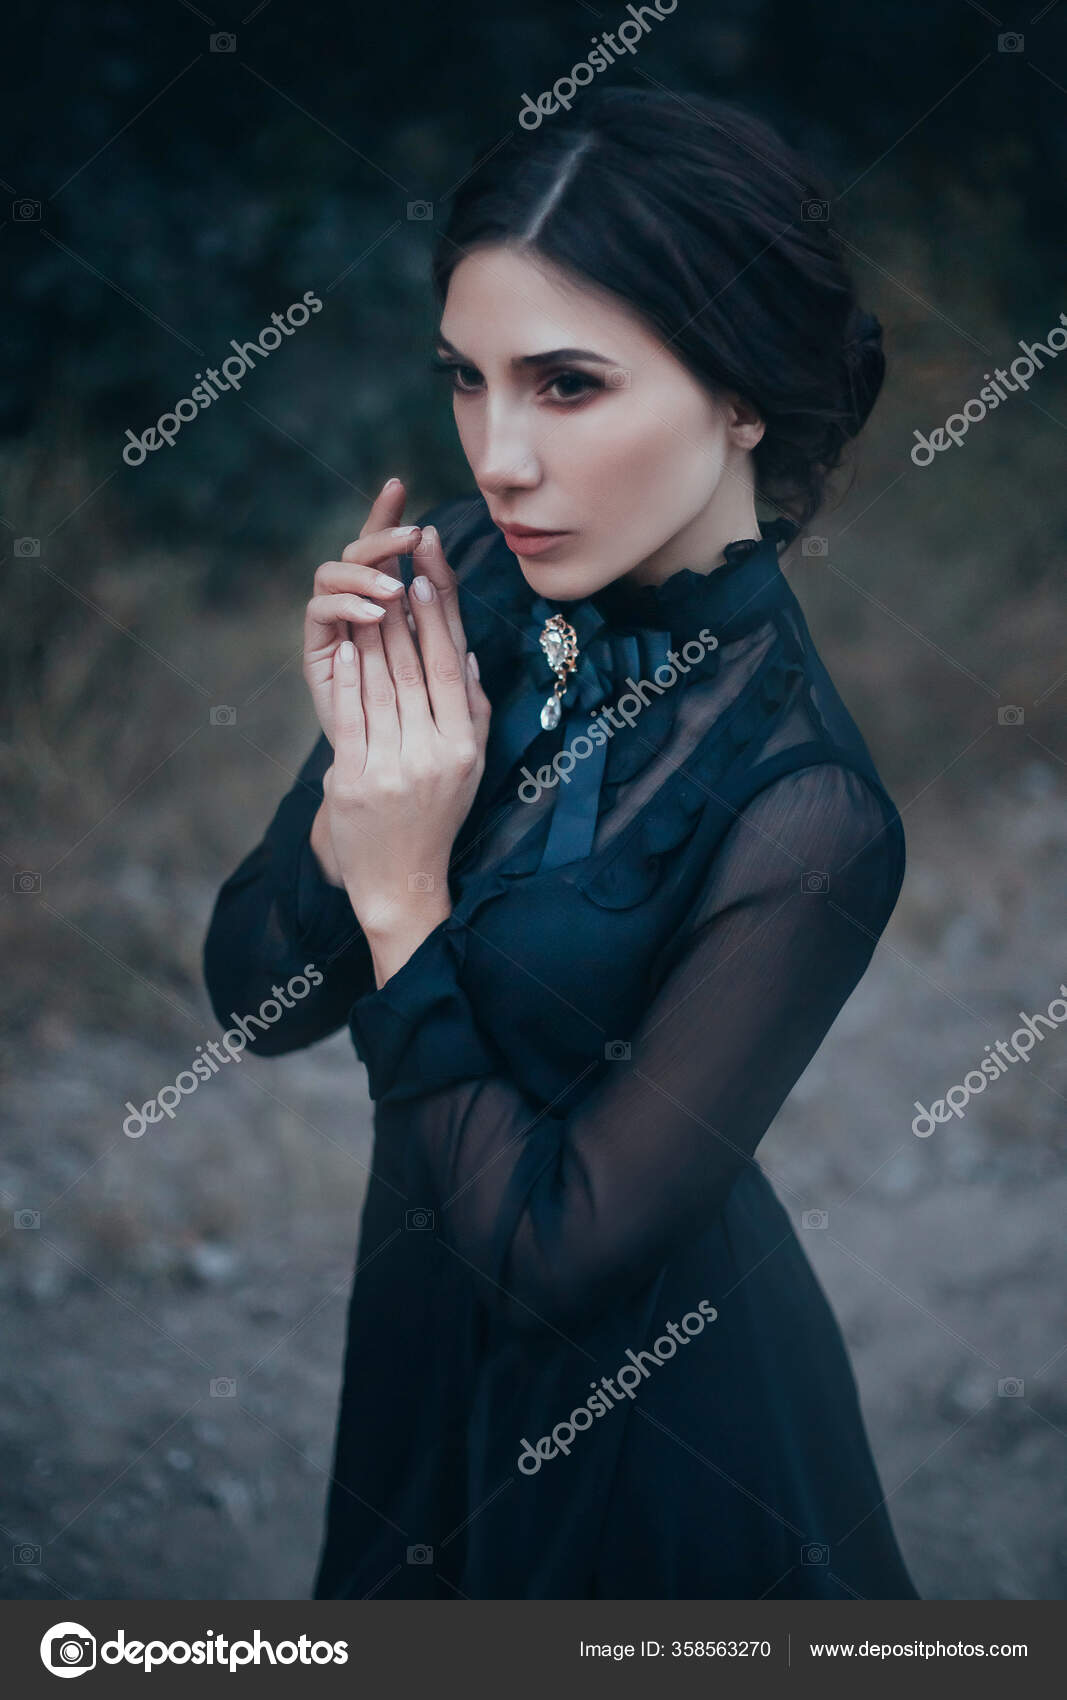 Jovem mulher com maquiagem de vampiro gótico na festa de halloween sobre  fundo preto